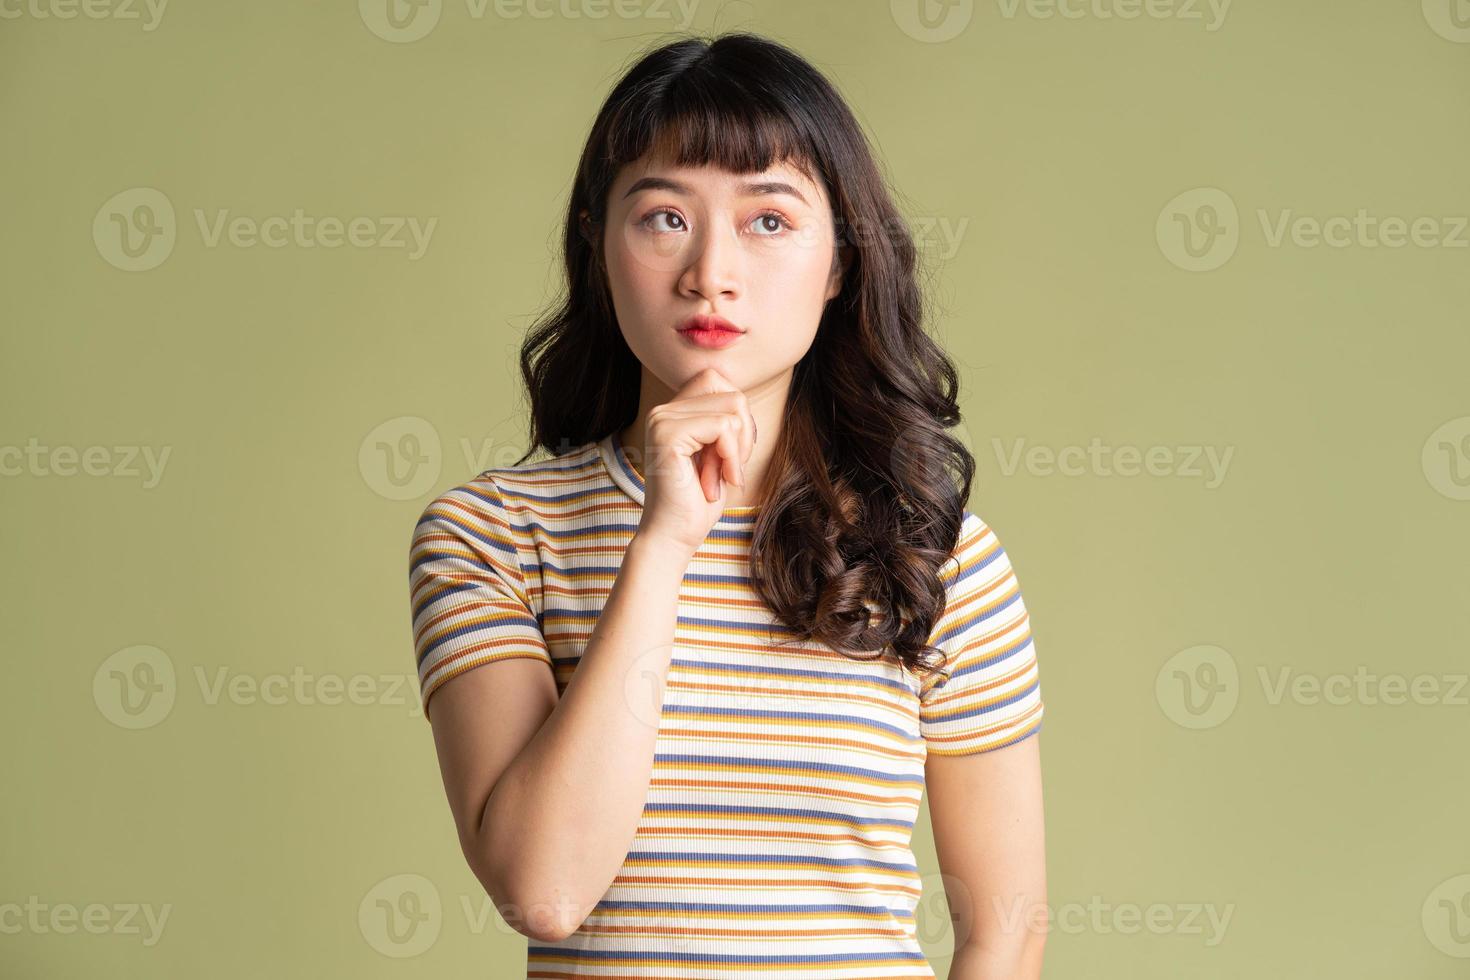 jonge mooie aziatische vrouw die zich voordeed op de achtergrond foto